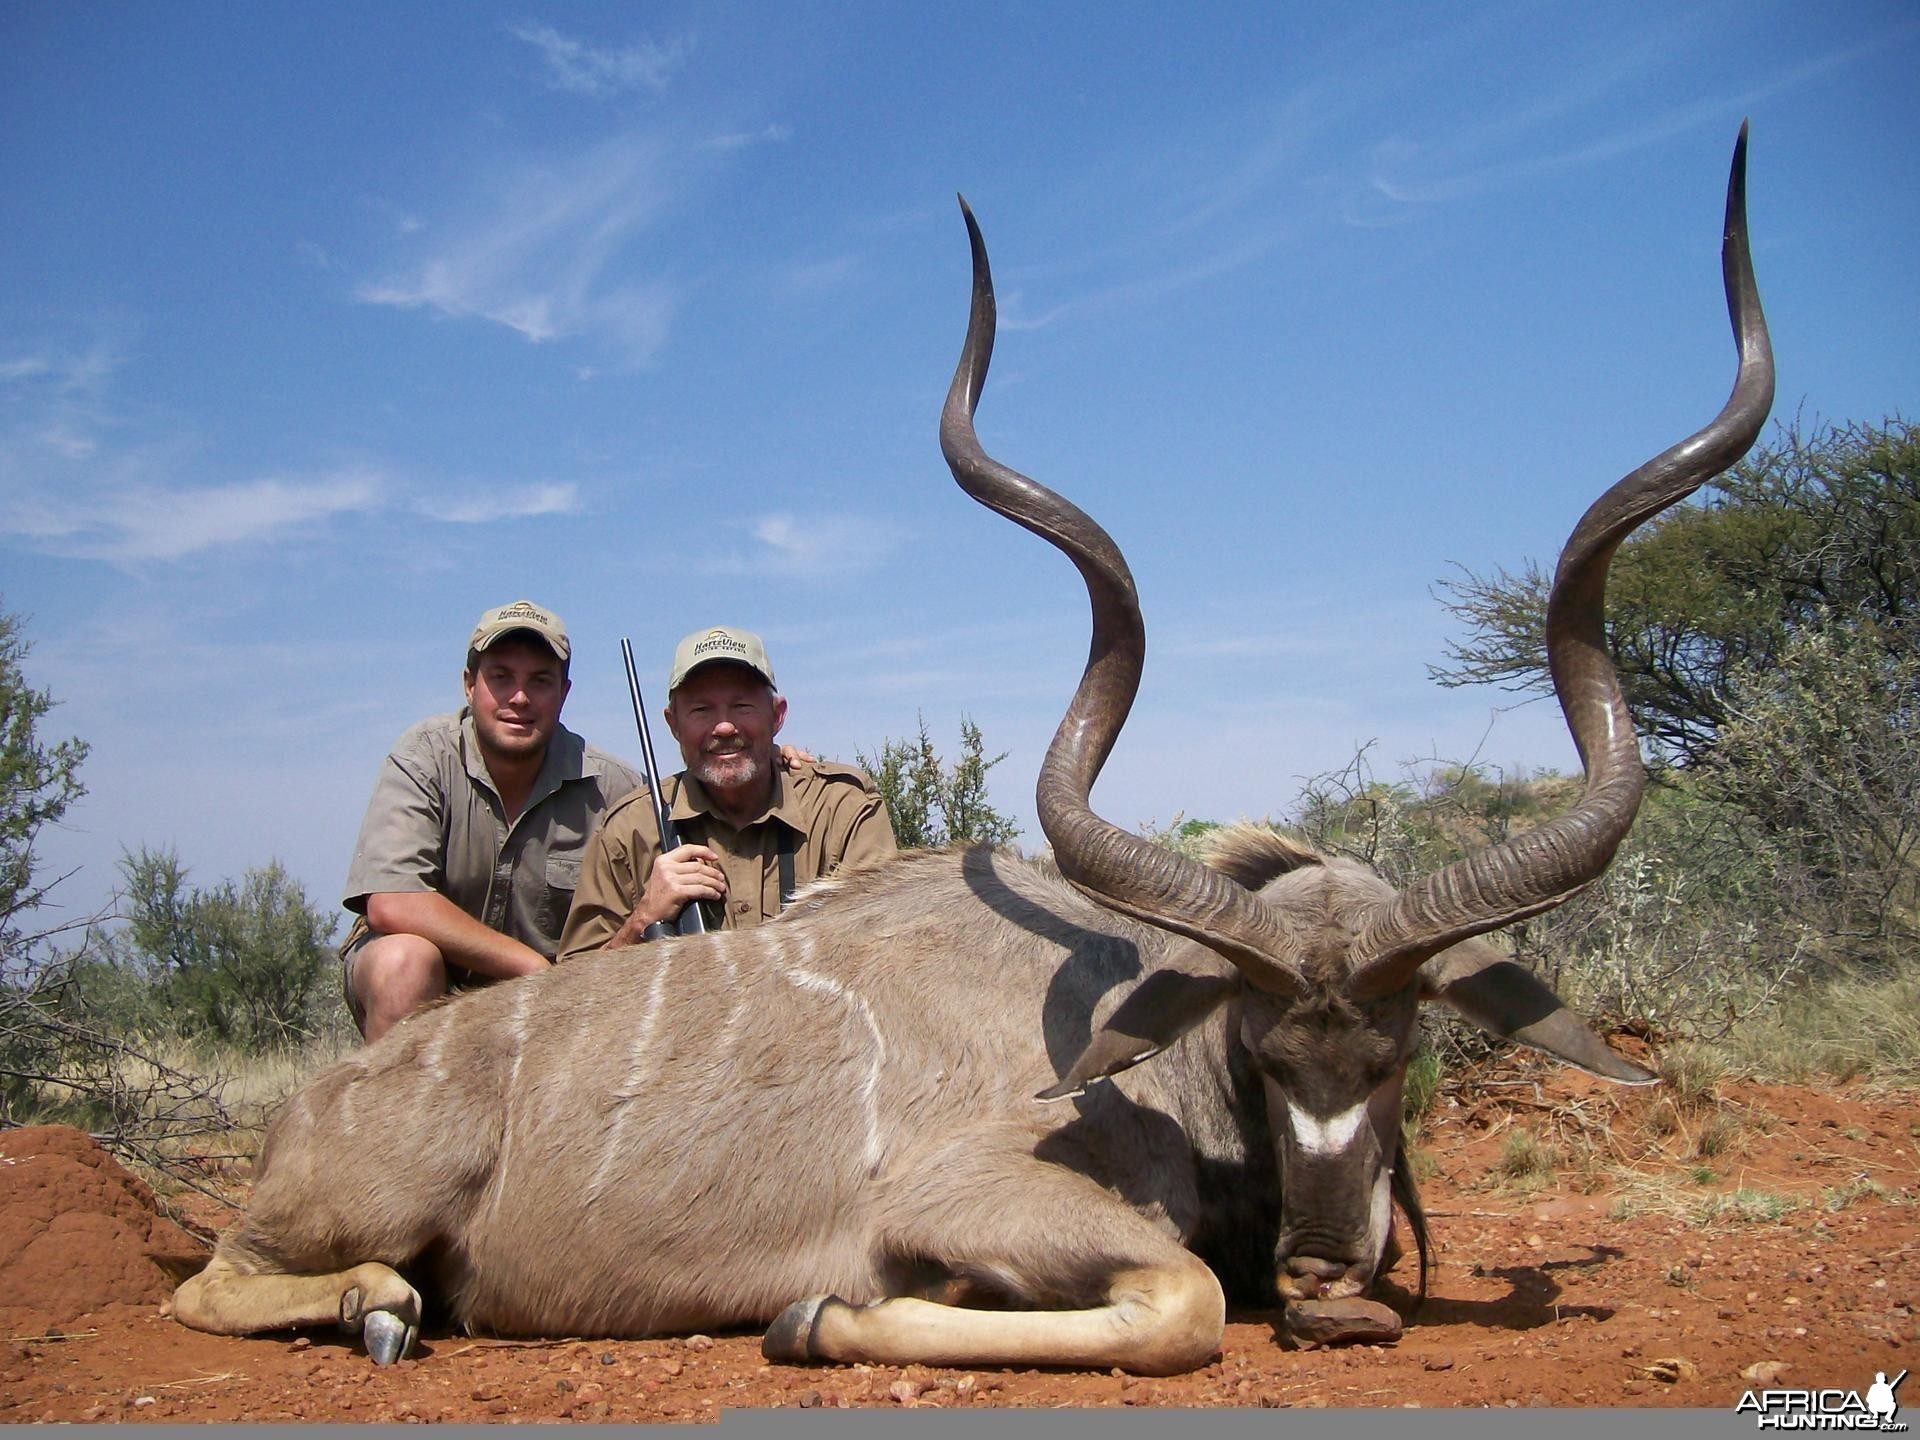 kudu Hunt at HartzView Hunting Safaris